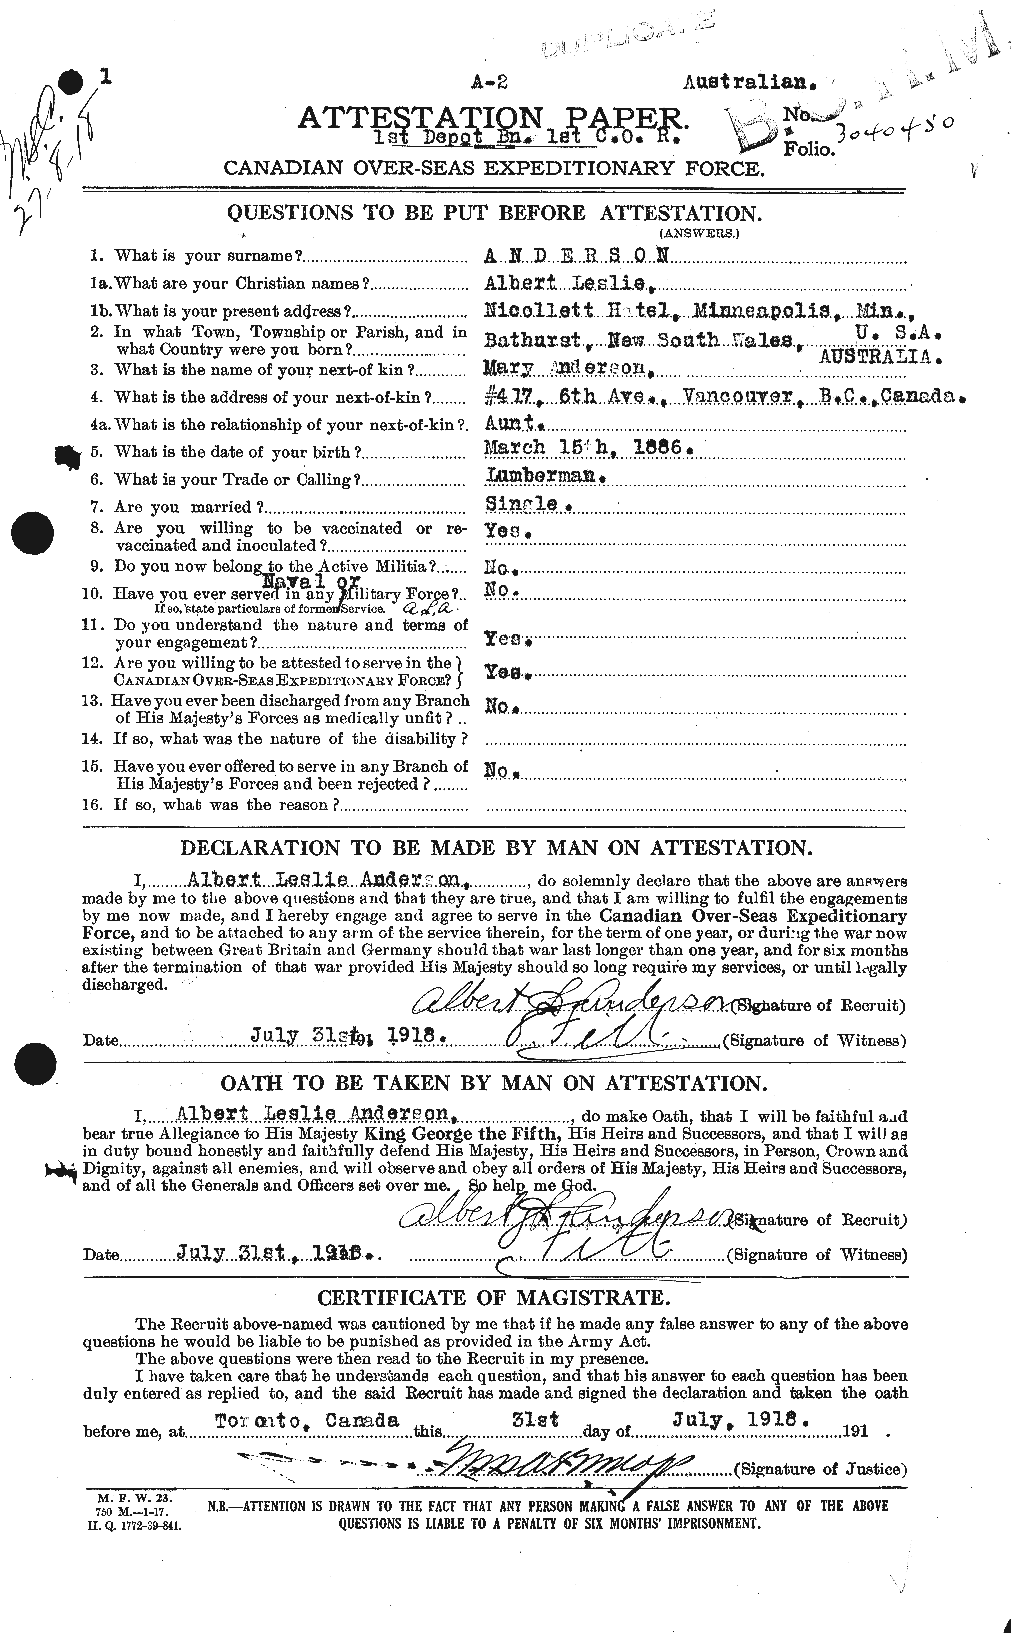 Dossiers du Personnel de la Première Guerre mondiale - CEC 209539a